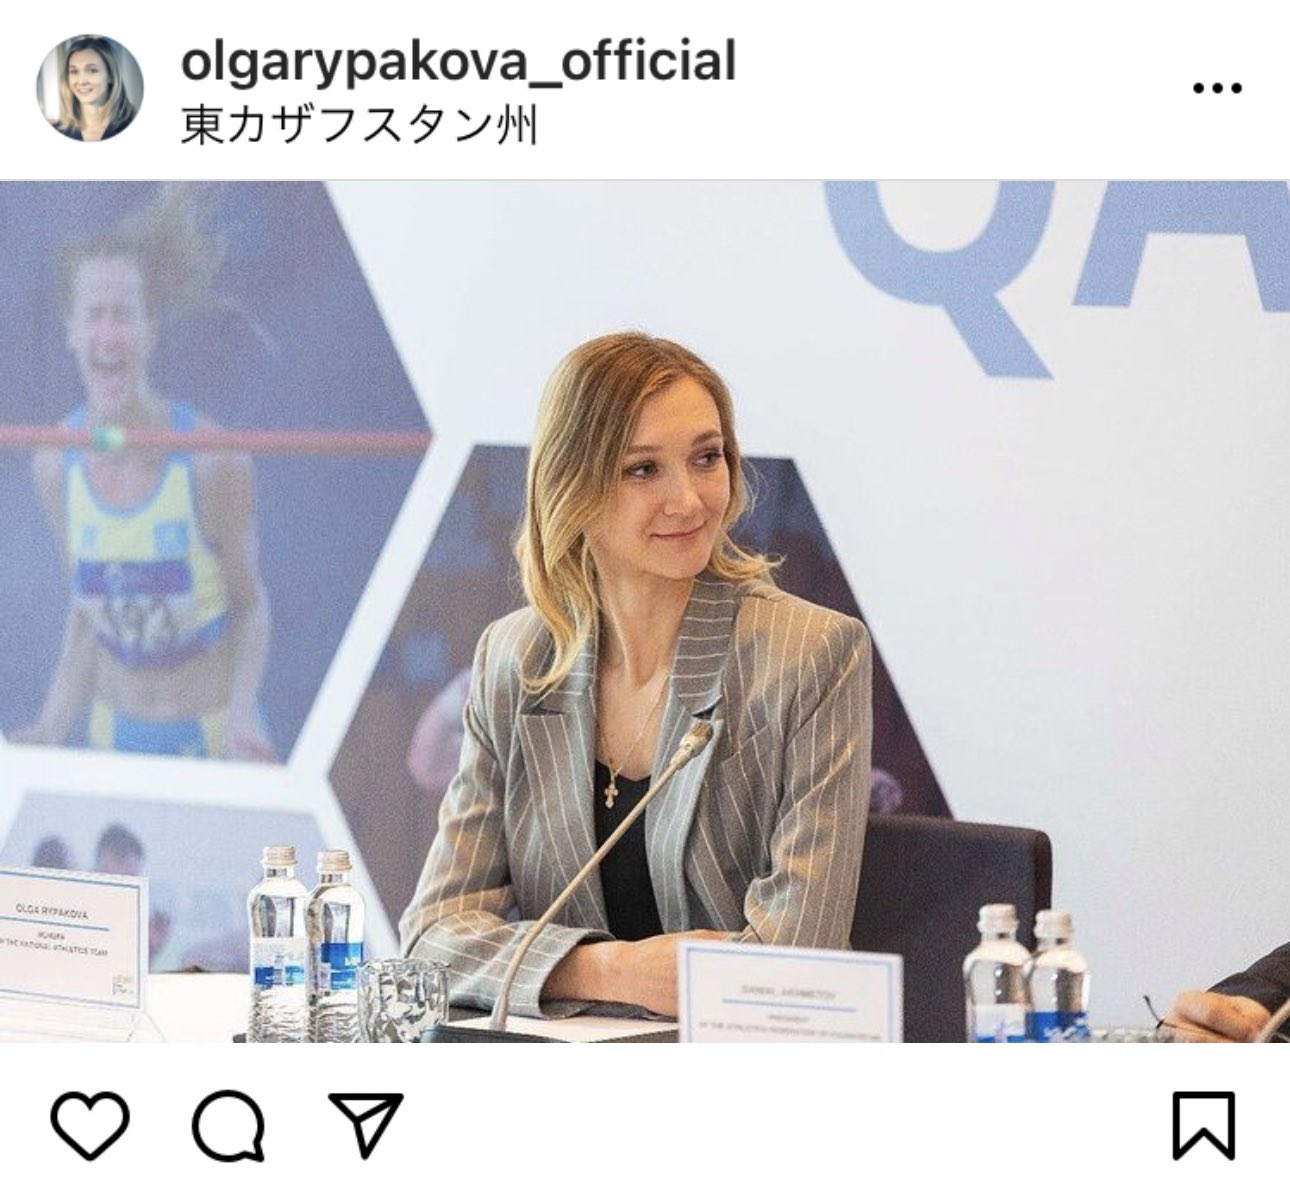 Phát sốt với trang phục của 'công chúa Olympic' người Kazakhstan